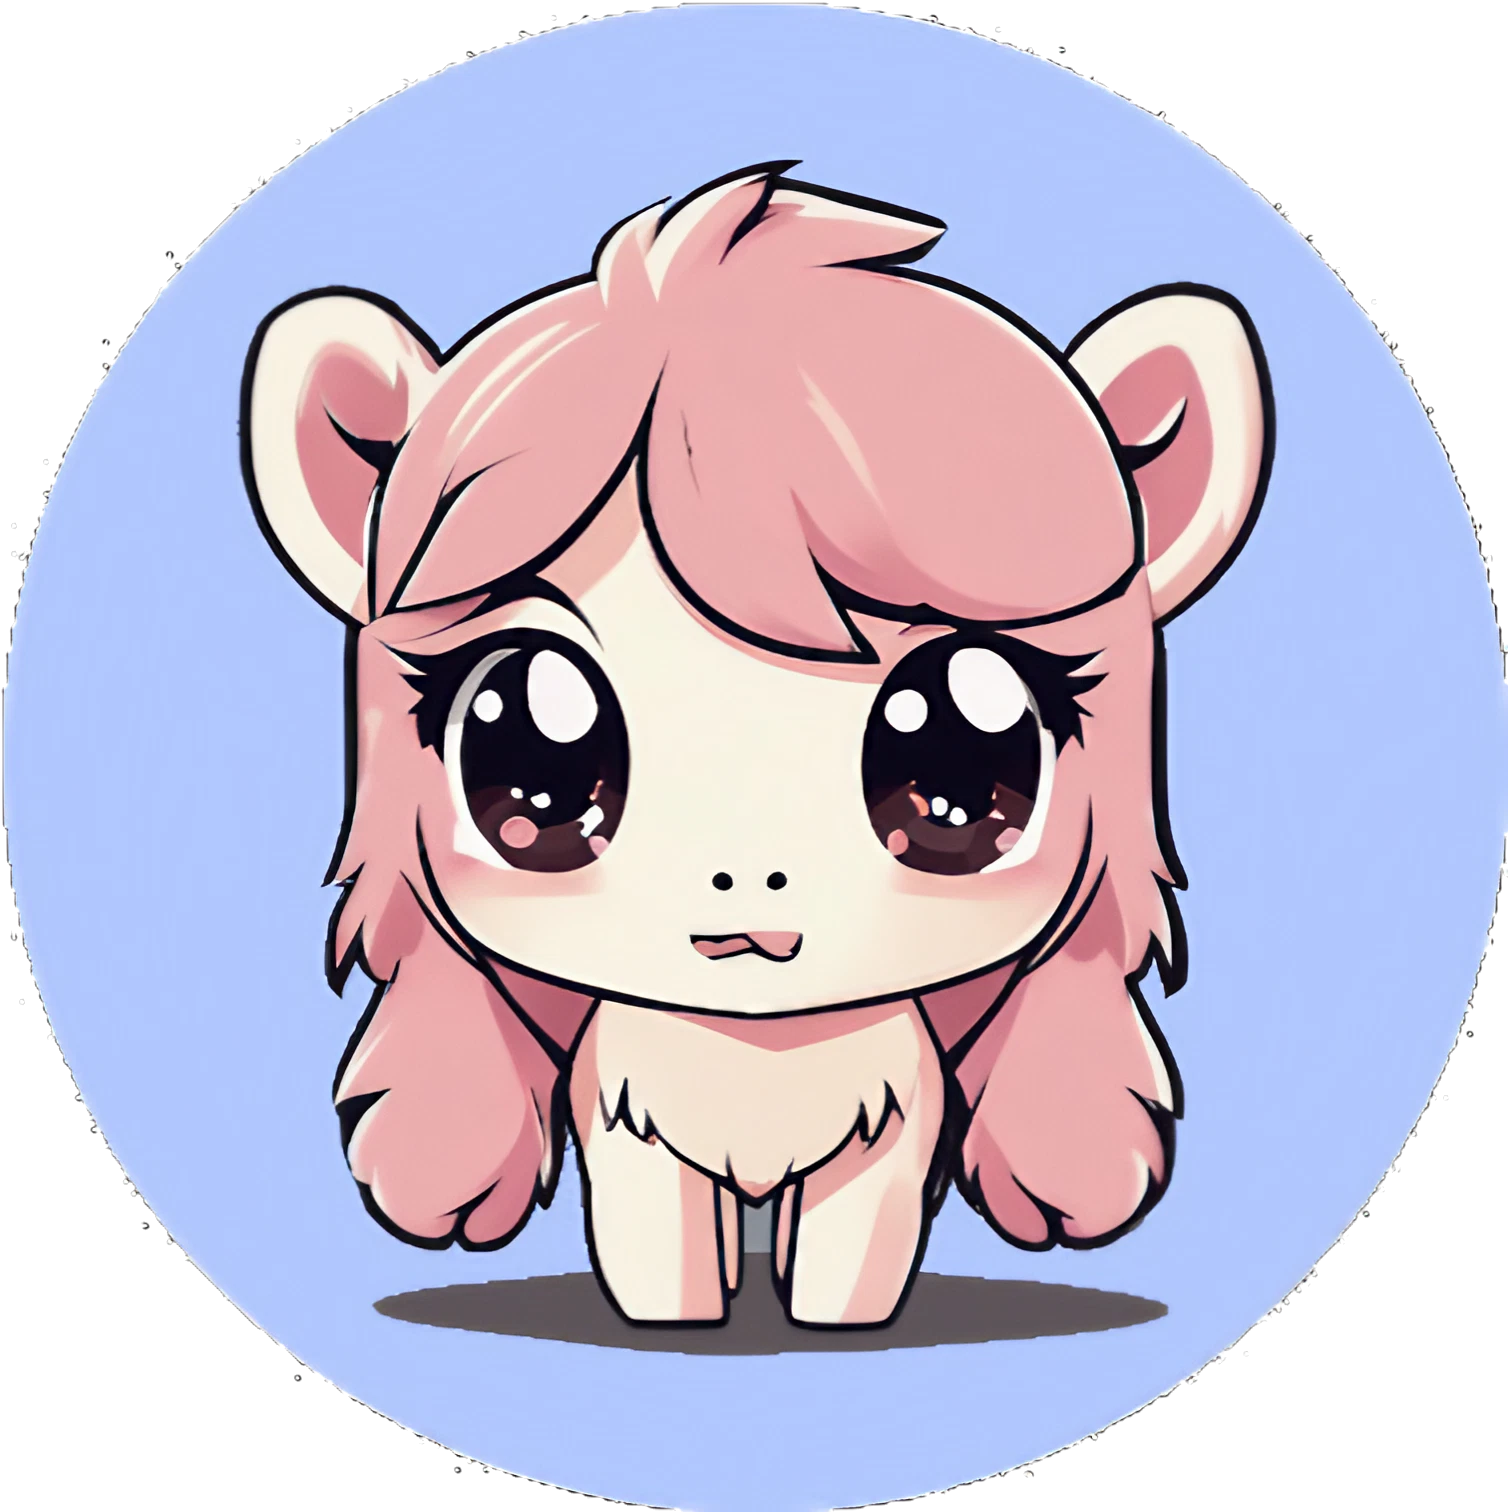 Pinkhaar Flausche Cute Kawaii Pony - Sticker - 3x3cm